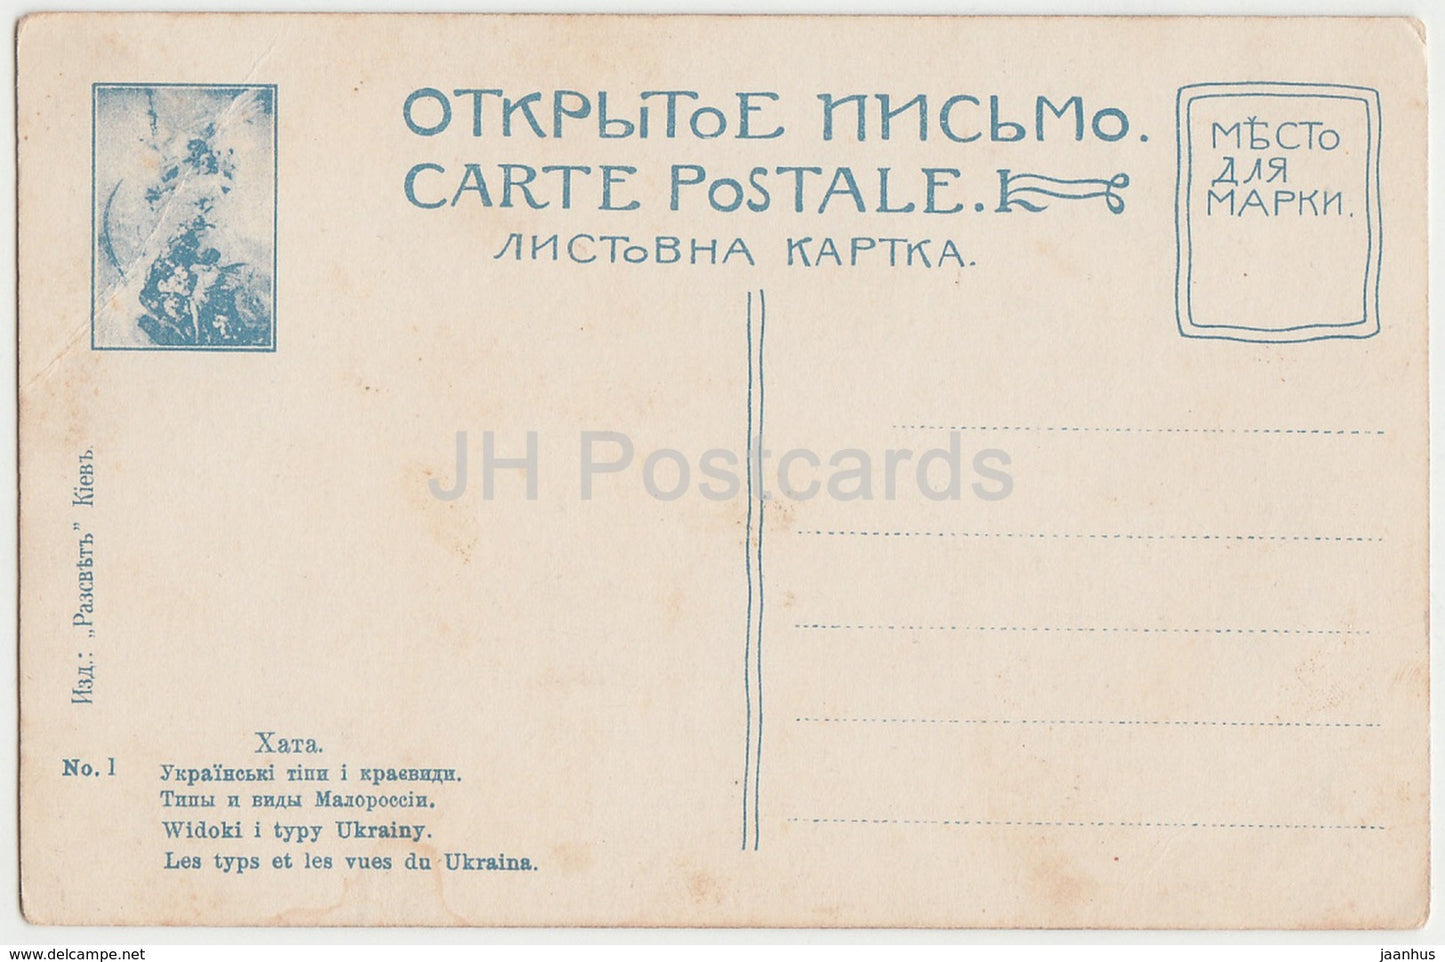 Khata - Ukrainian House - Les Typs et les vues du Ukraina - old postcard - Ukraine - Imperial Russia - unused